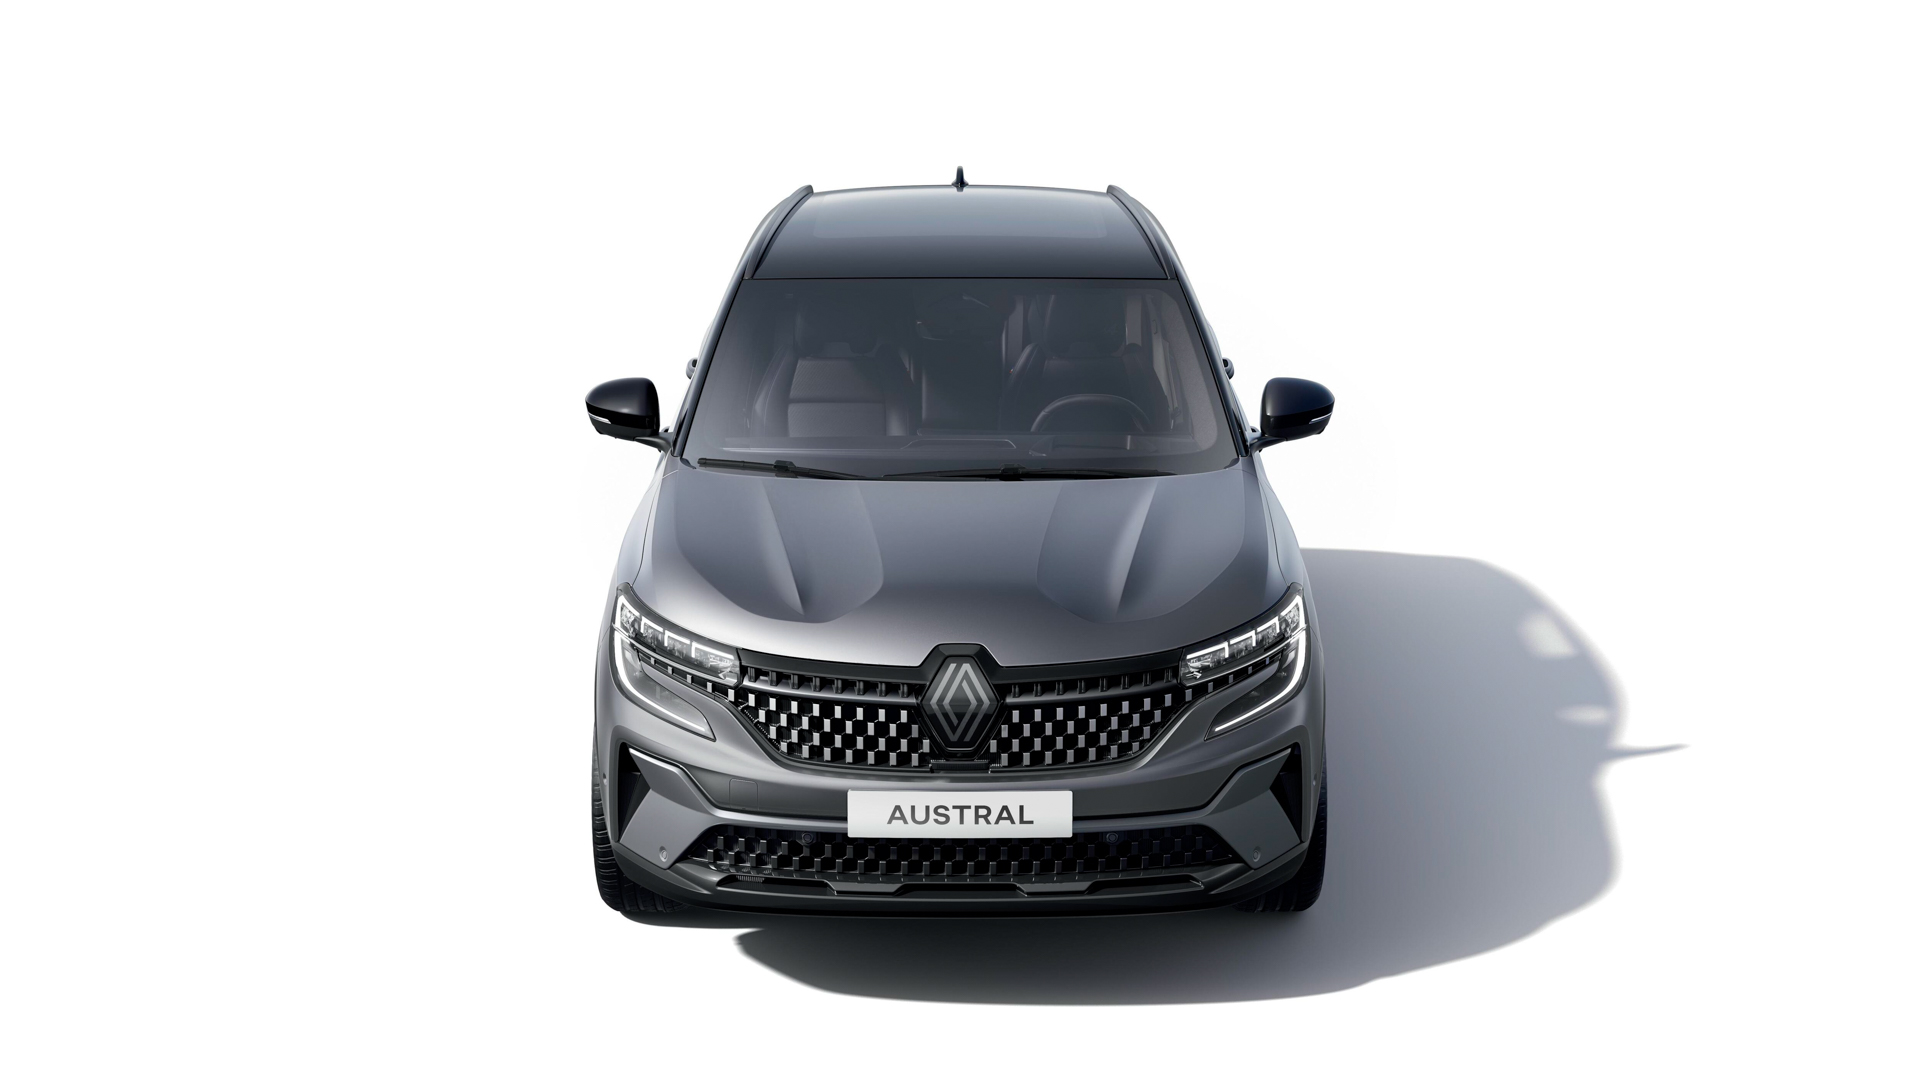 2022 Renault Austral